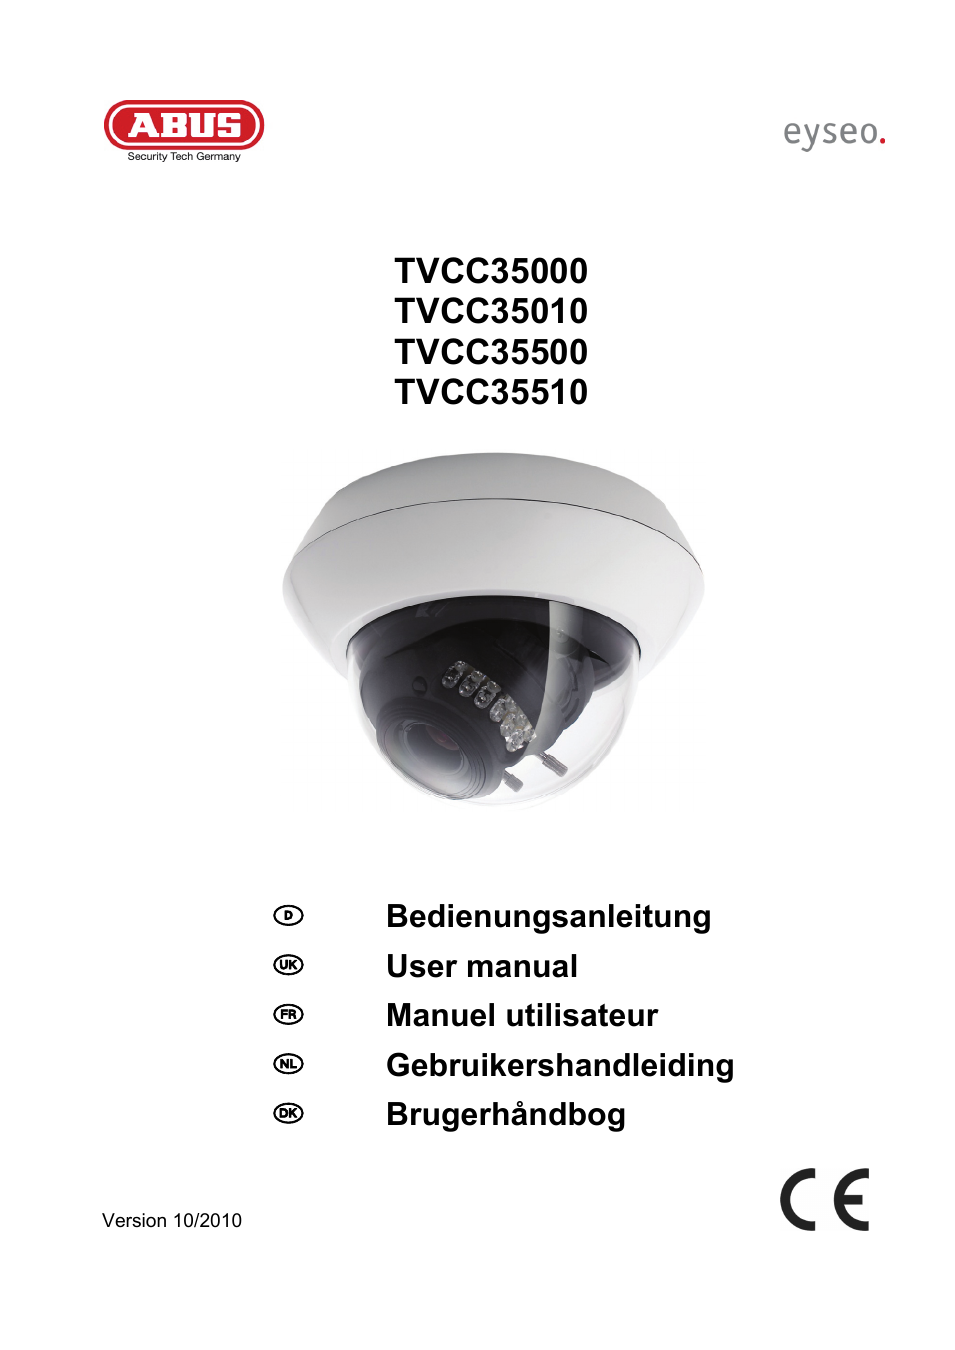 TVCC35010